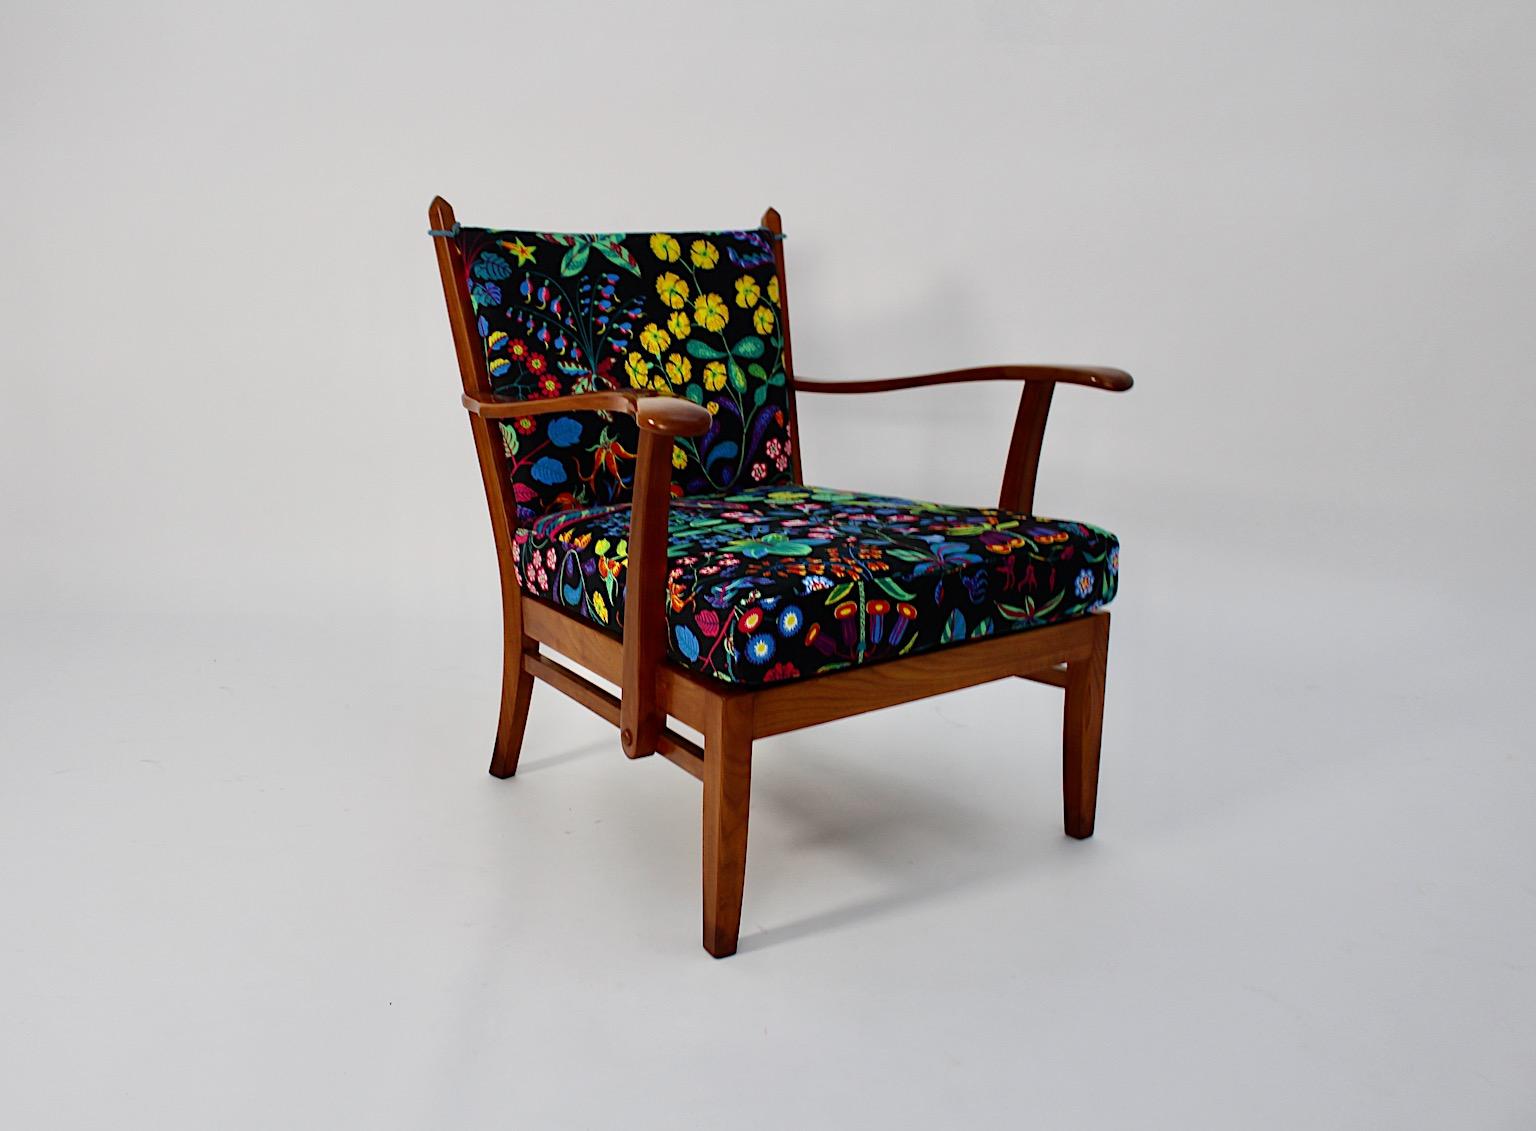 Kirschbaumsessel im Art Deco-Stil, Josef Frank zugeschrieben, um 1925 Österreich.
Ein schöner, gemütlicher Sessel aus massivem Kirschholz mit neuen, handgefertigten, losen Kissen, die dem Designer Josef Frank zugeschrieben werden.
Dieser Sessel hat